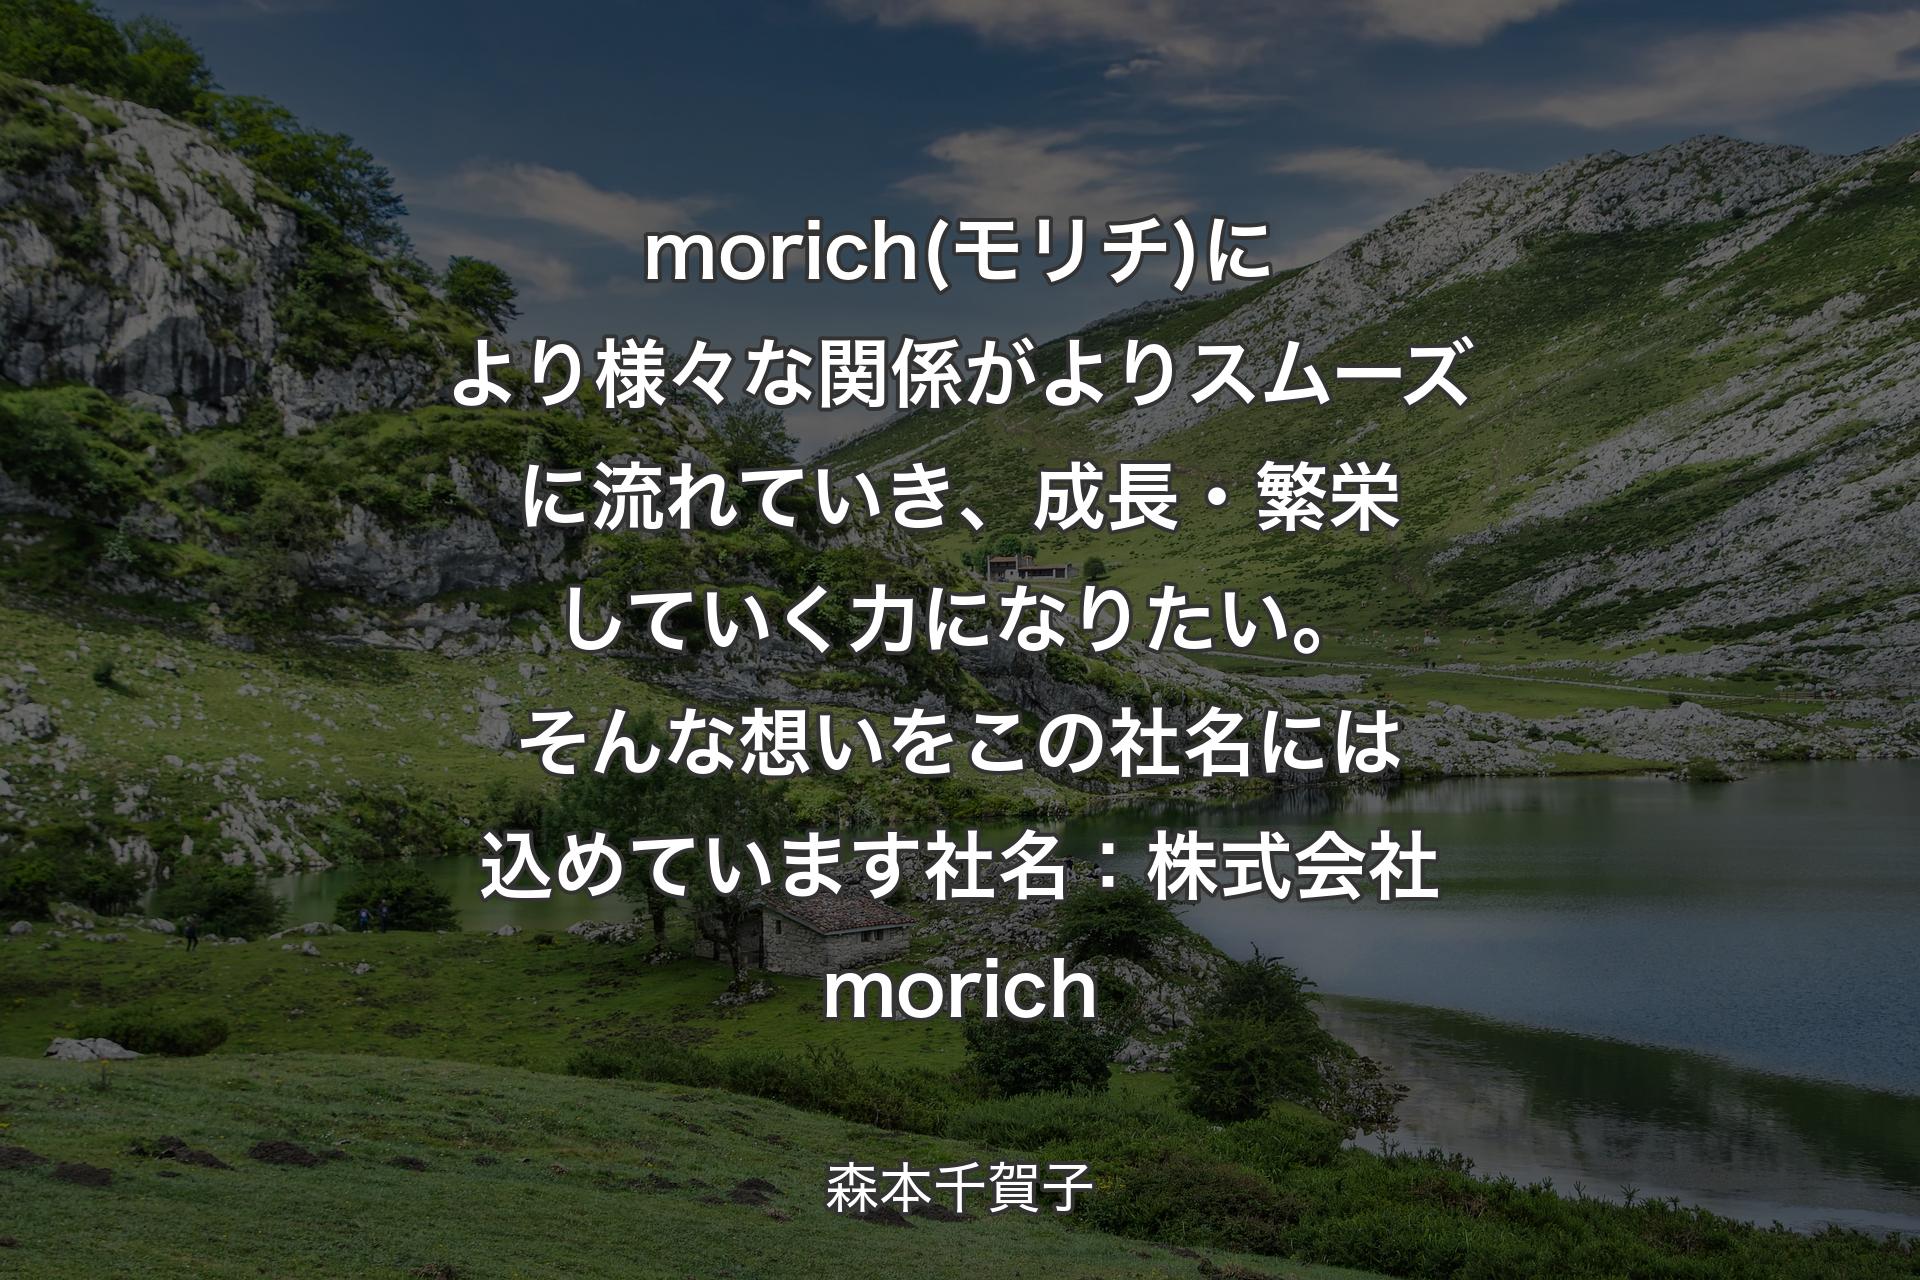 【背景1】morich(モリチ)により様々な関係がよりスムーズに流れていき、成長・繁栄していく力になりたい。そんな想いをこの社名には込めています社名：株式会社morich - 森本千賀子